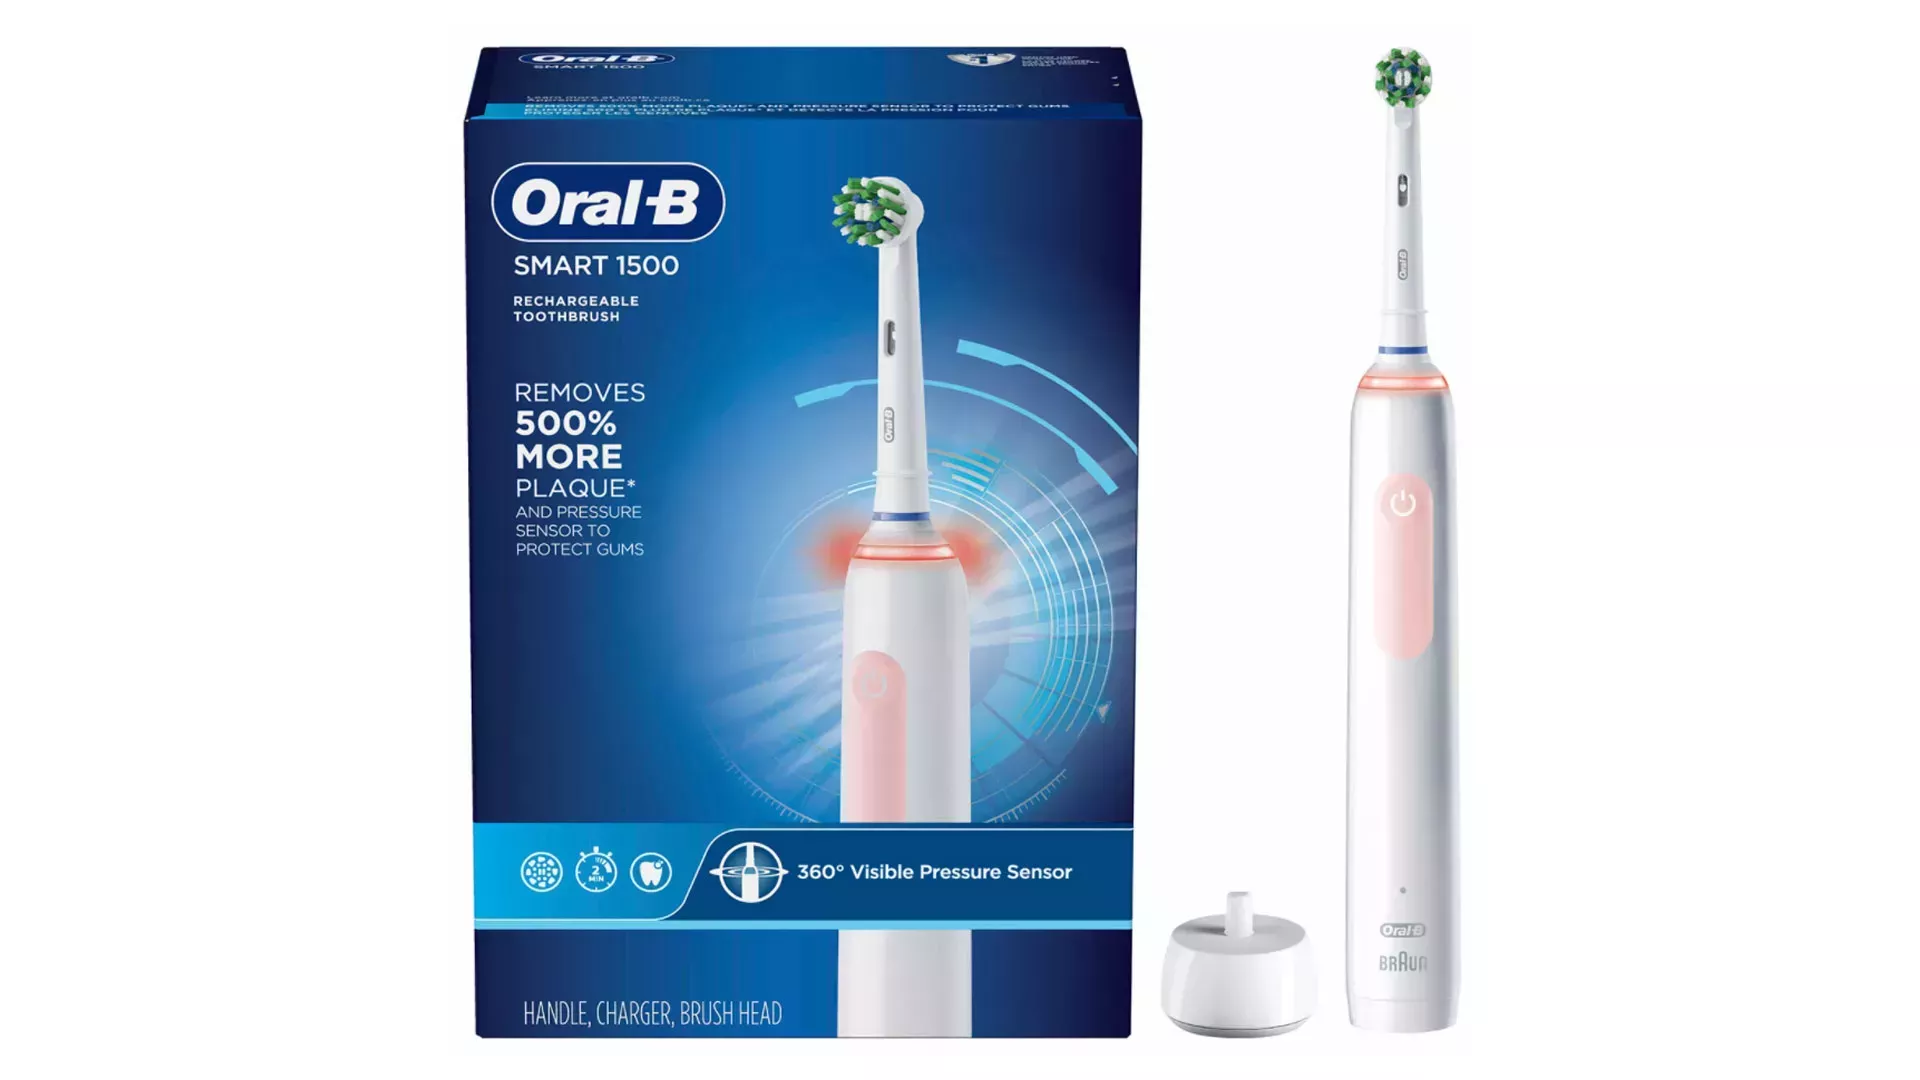  Cepillos de dientes con descuento en stock y disponibles